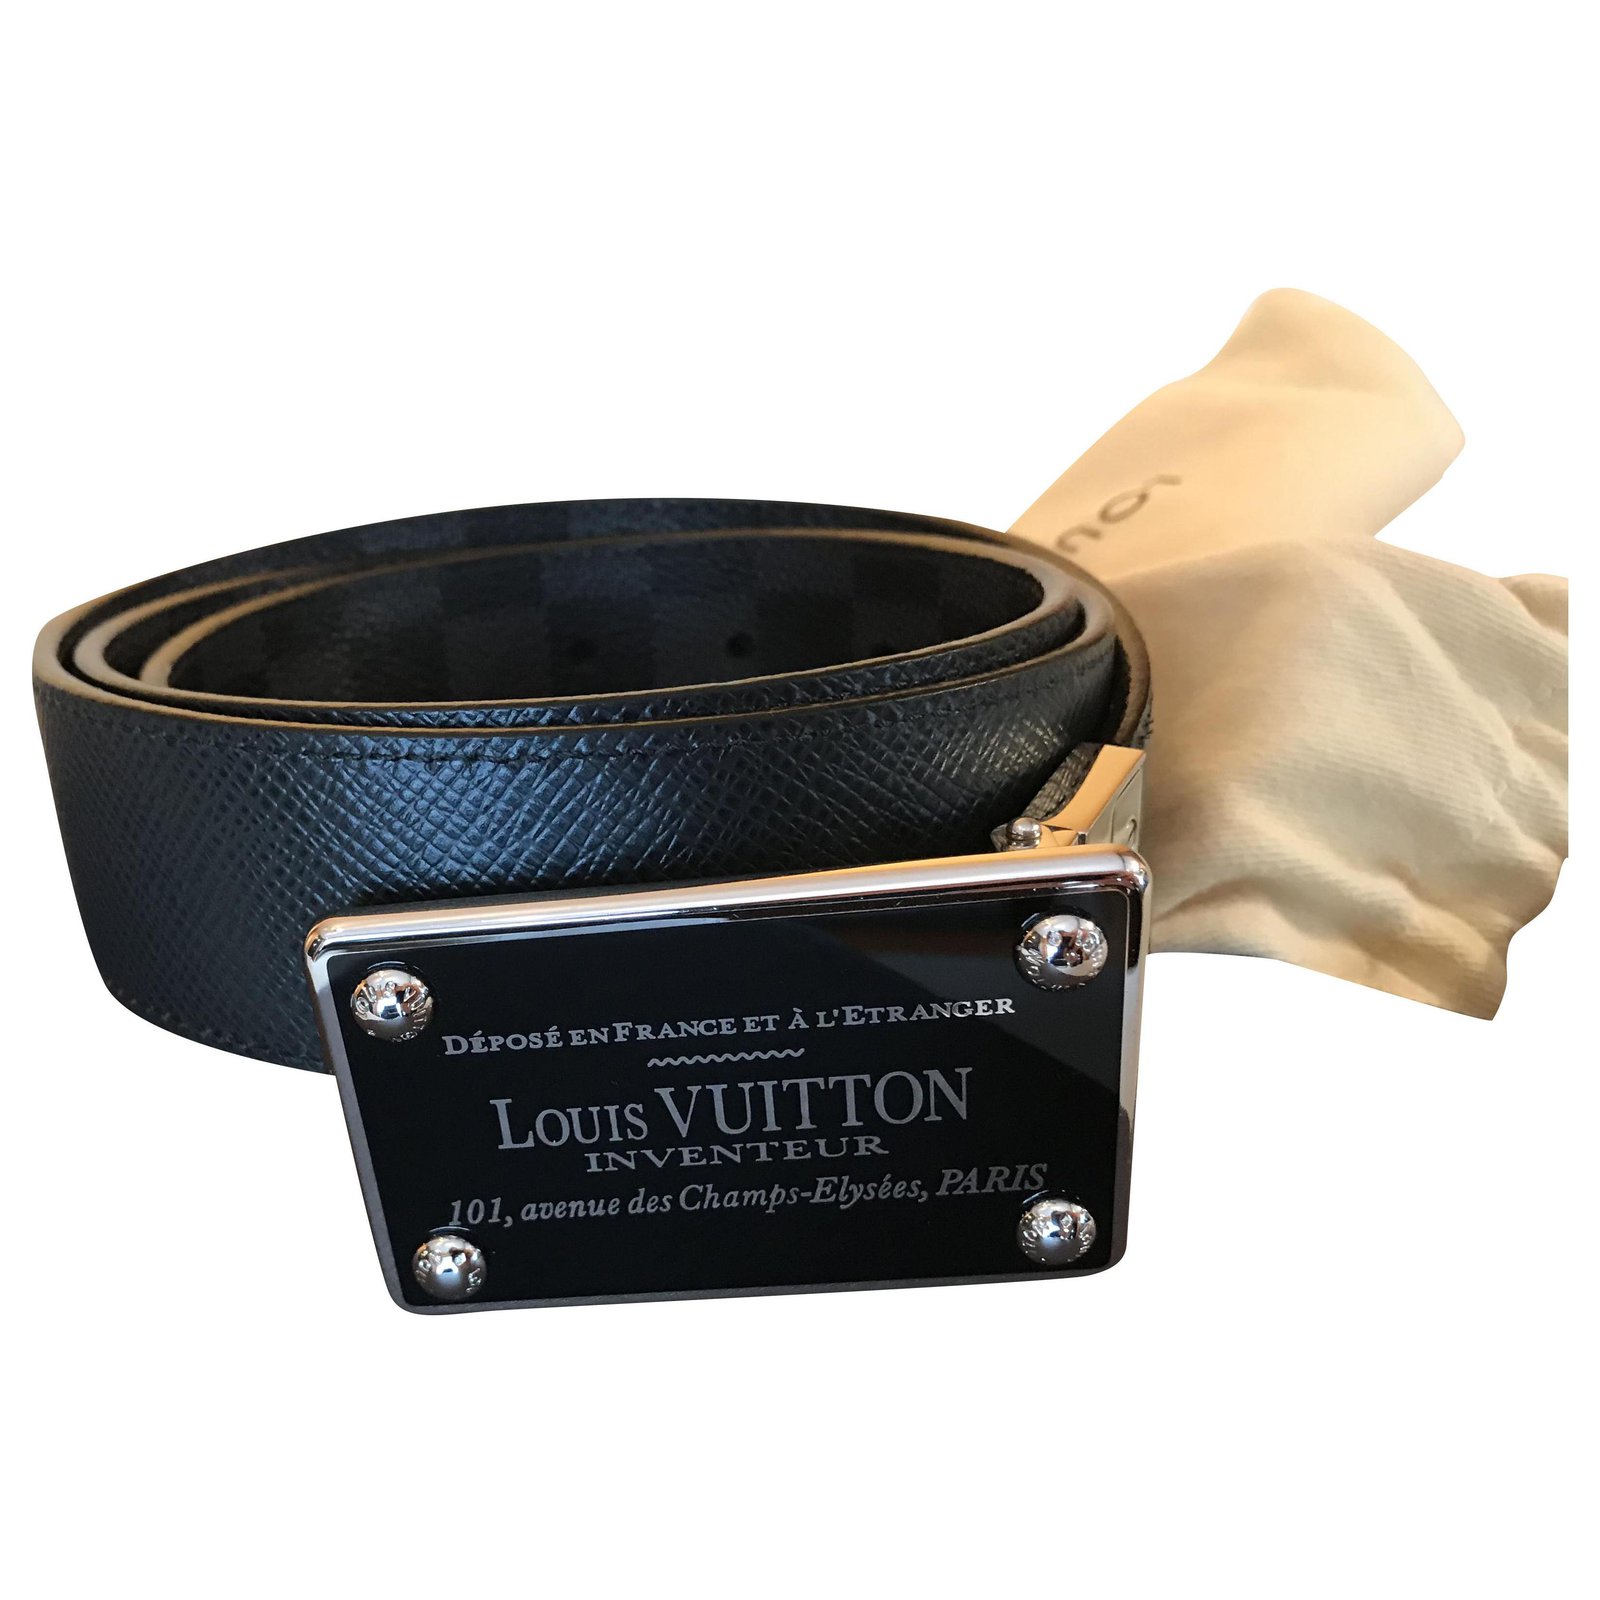 Cinturon Cinto Importado Louis Vuitton Largo total: 110 cm Ancho